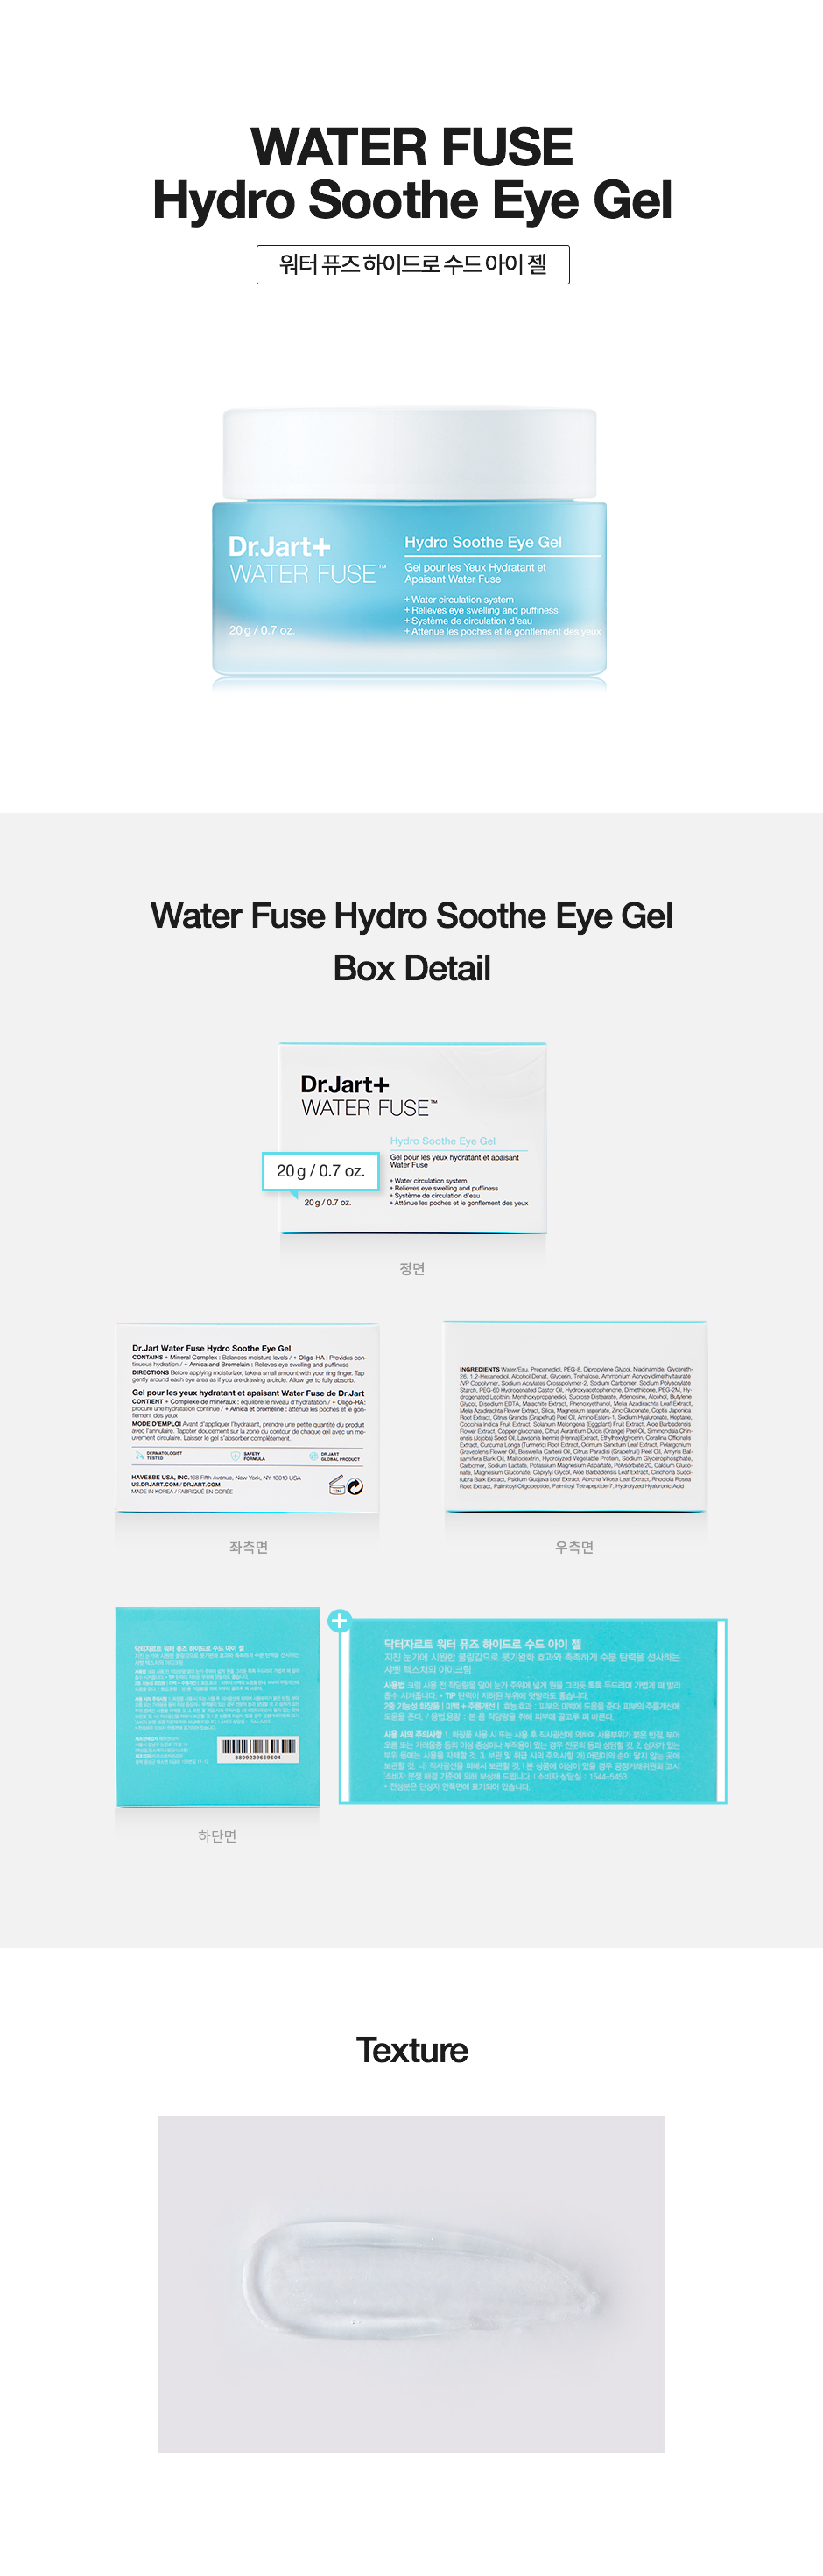 waterfuse_hydro_soothe_eye_gel_940.jpg